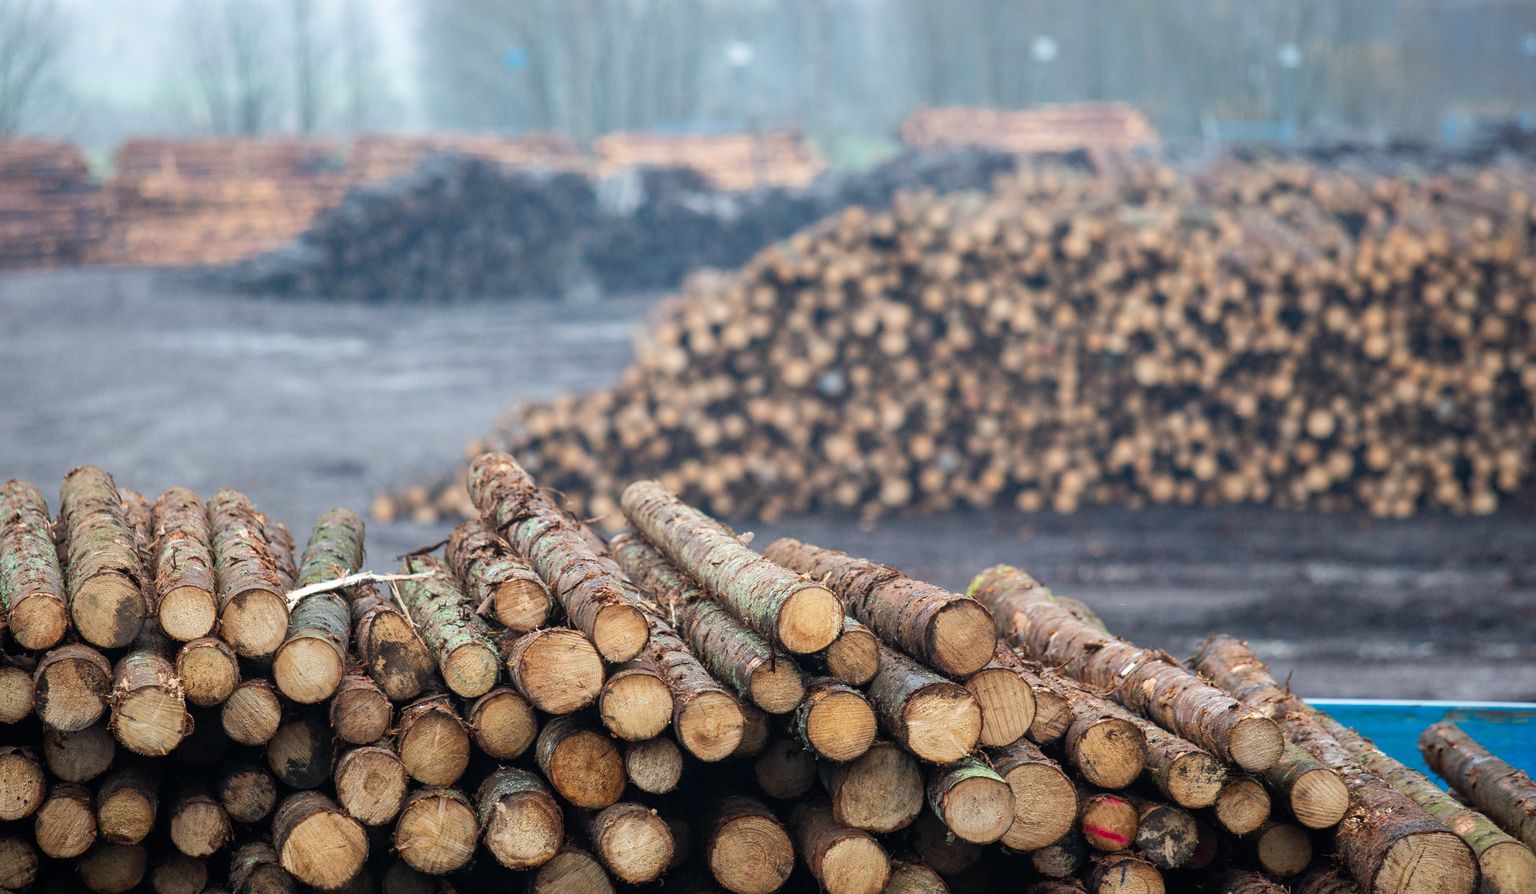 Europarlamendis läbis hääletuse taastuvenergia direktiivi muudatused, millega soovitakse lõpetada toetuste maksmine metsast pärit puitu põletavatele ettevõtetele. Foto on illustratiivne.